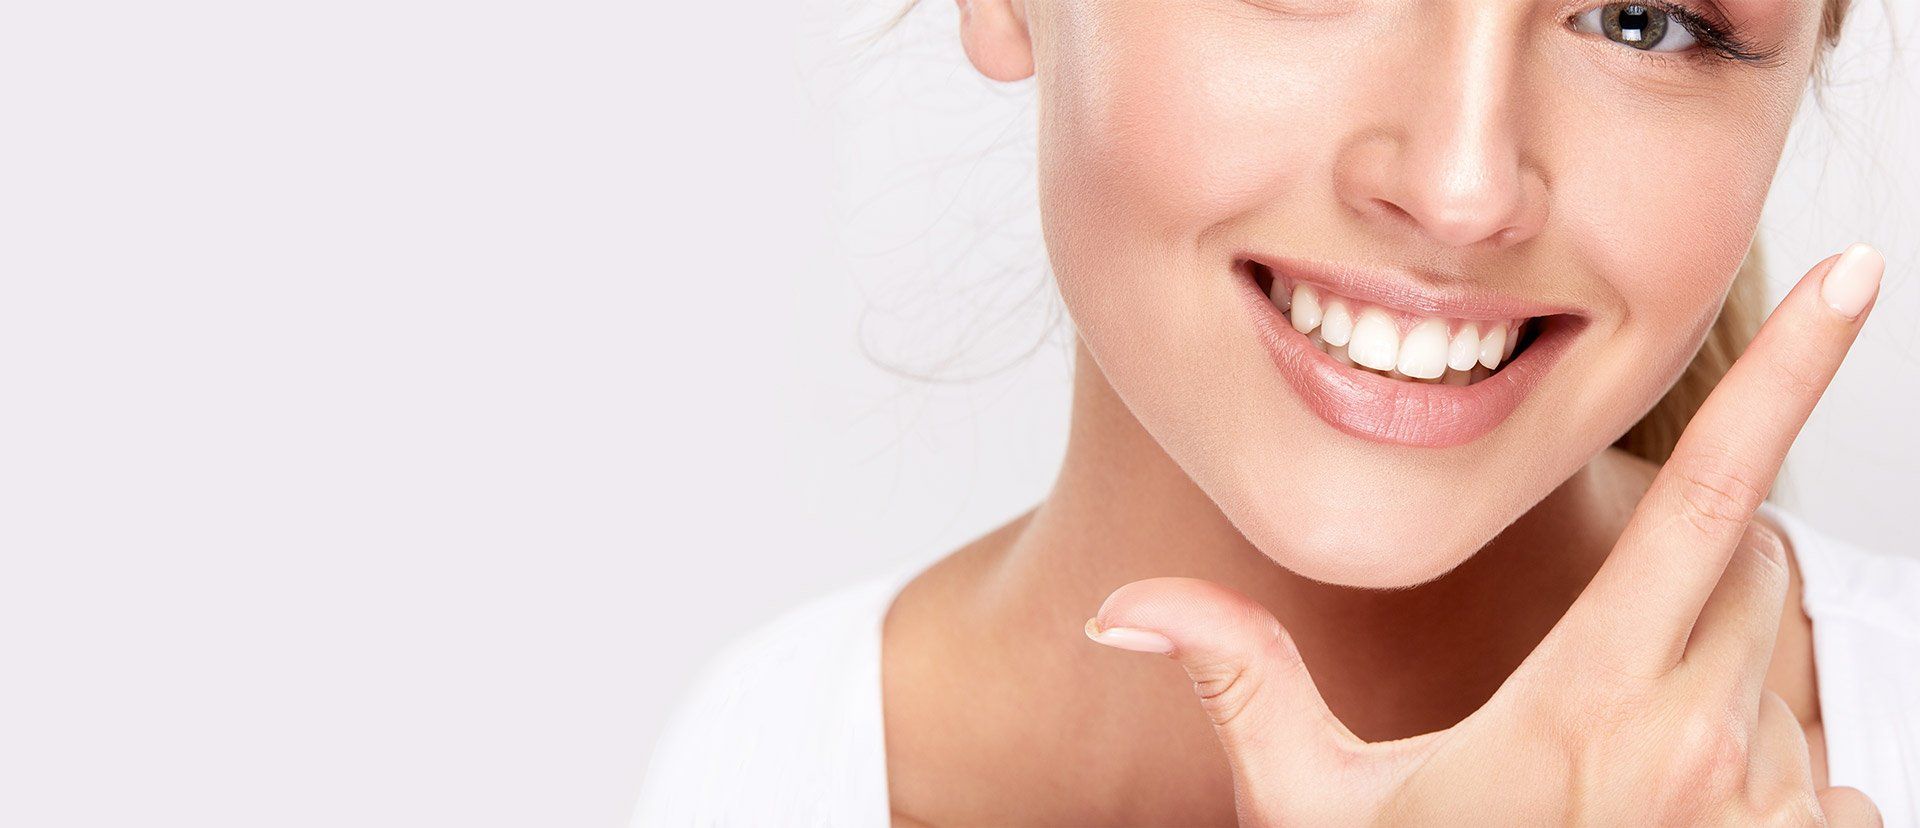 Gesunde Zähne mit Prophylaxe für Kinder und Jugendliche und Professioneller Zahnreinigung (PZR) für Erwachsene